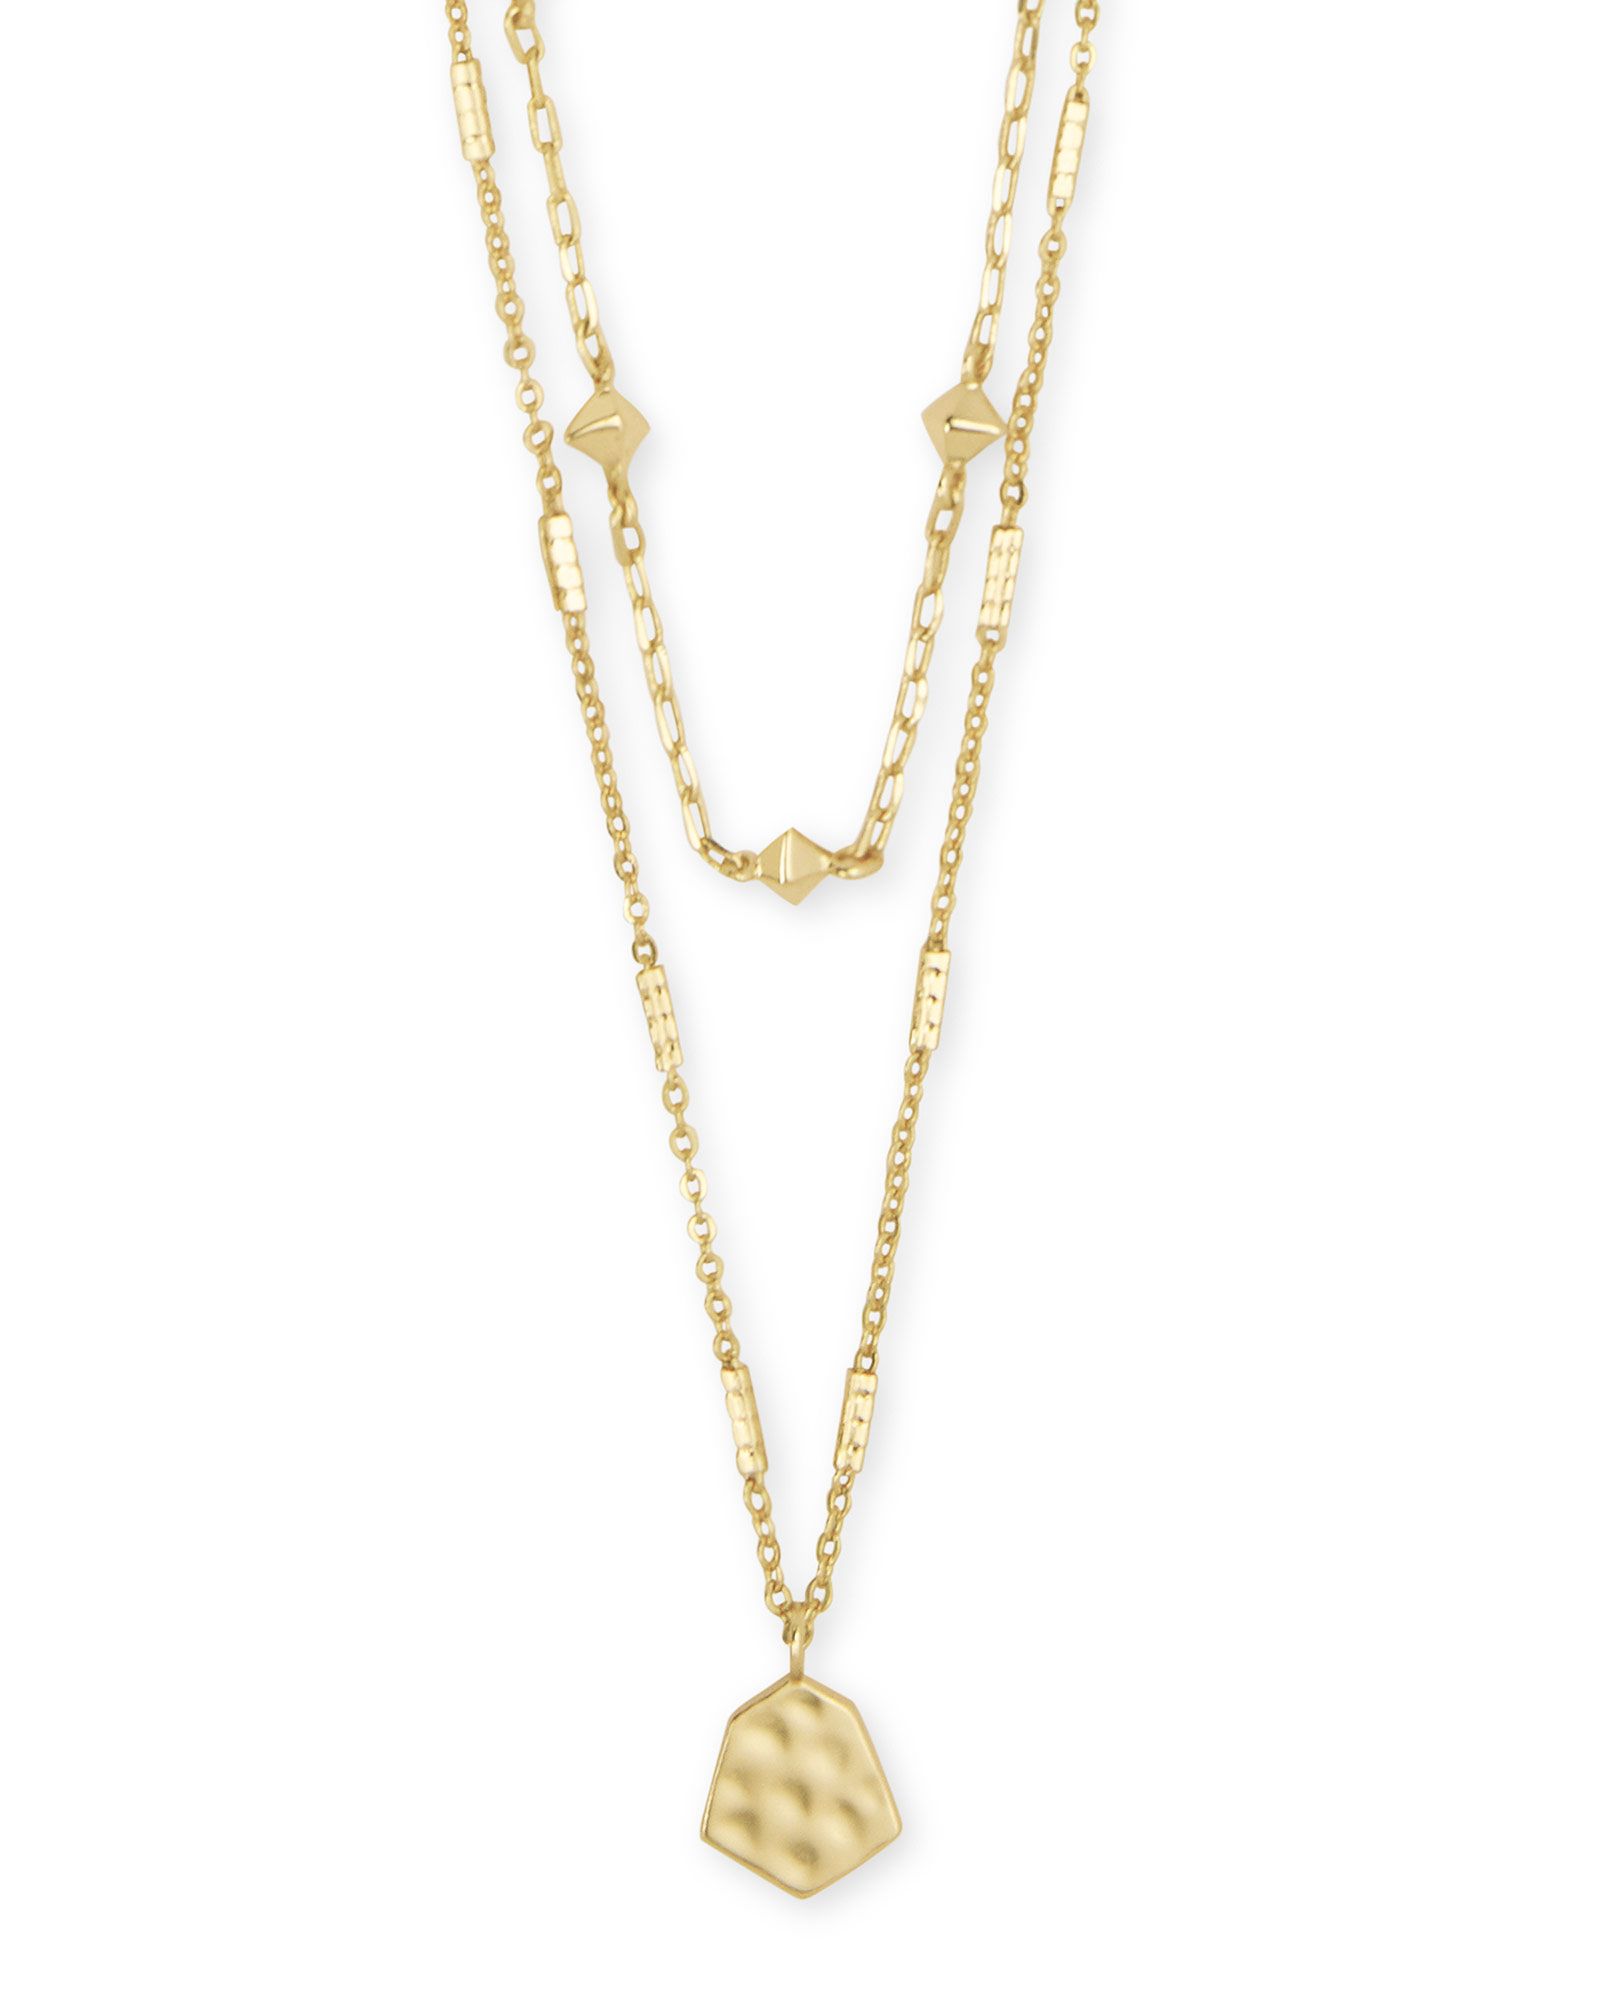 Clove Multi Strand Necklace in Gold | Kendra Scott | Kendra Scott